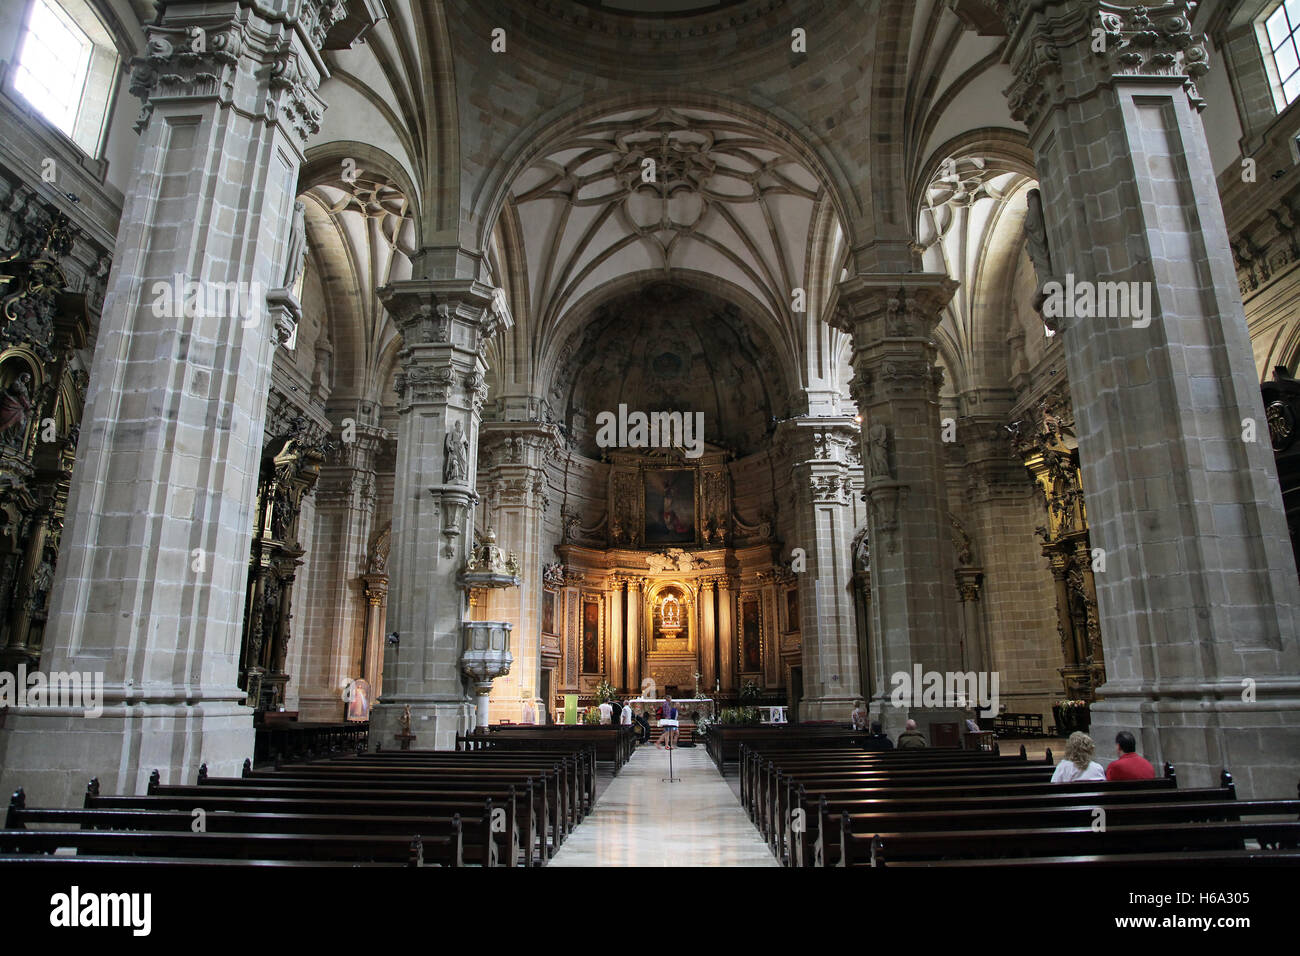 Basilica of Santa Maria del Coro San Sebastian Donostia Basque Country Spain Stock Photo